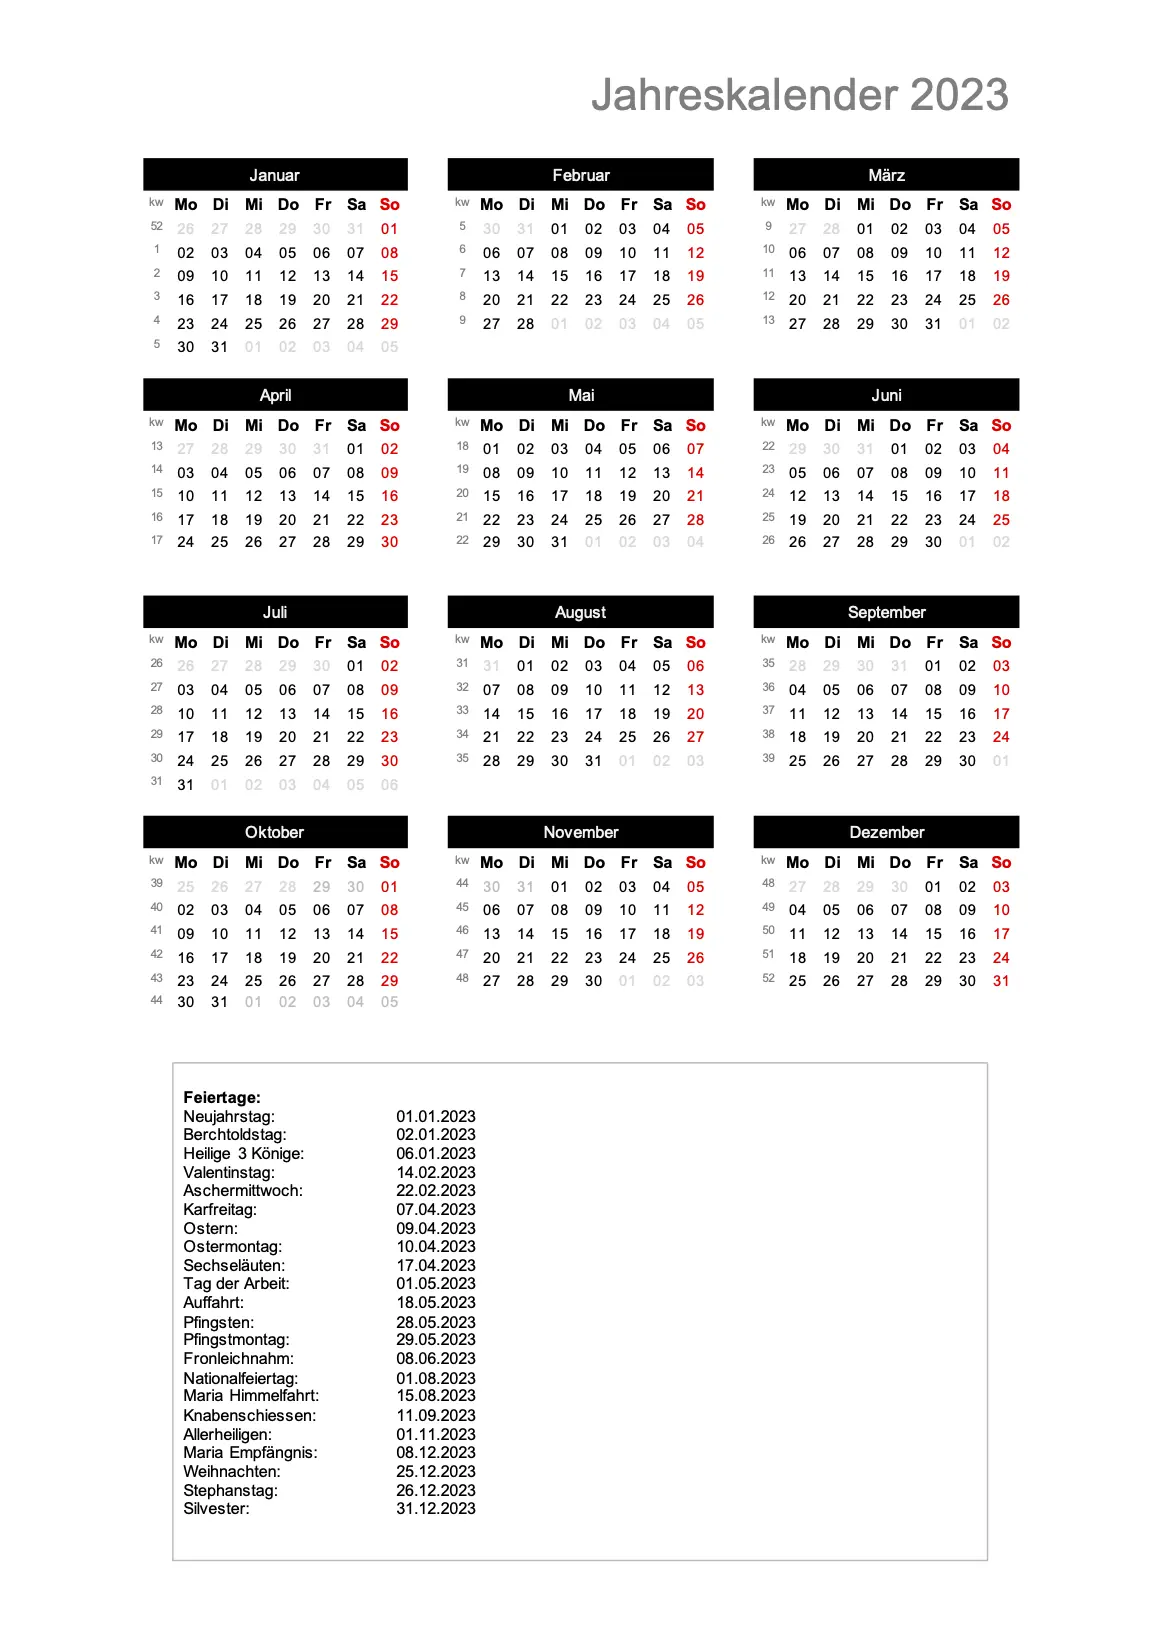 Jahreskalender 2023 im Hochformat